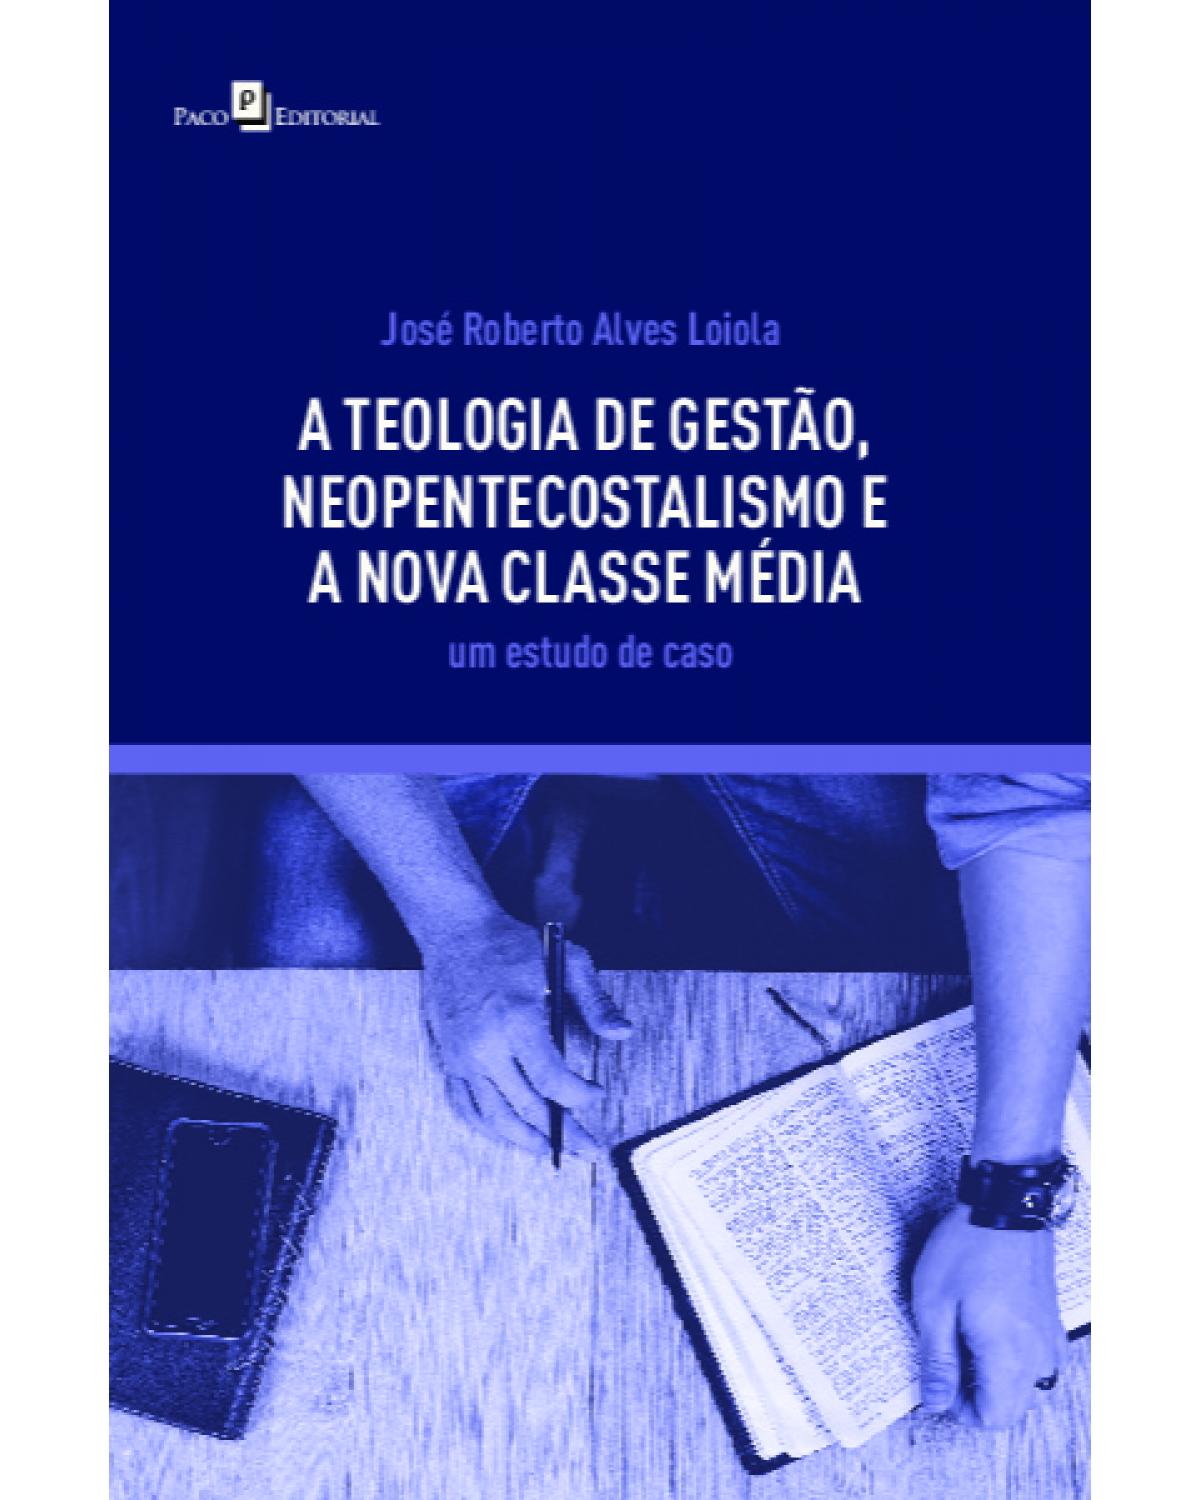 A teologia de gestão, neopentecostalismo e a nova classe média - um estudo de caso - 1ª Edição | 2021